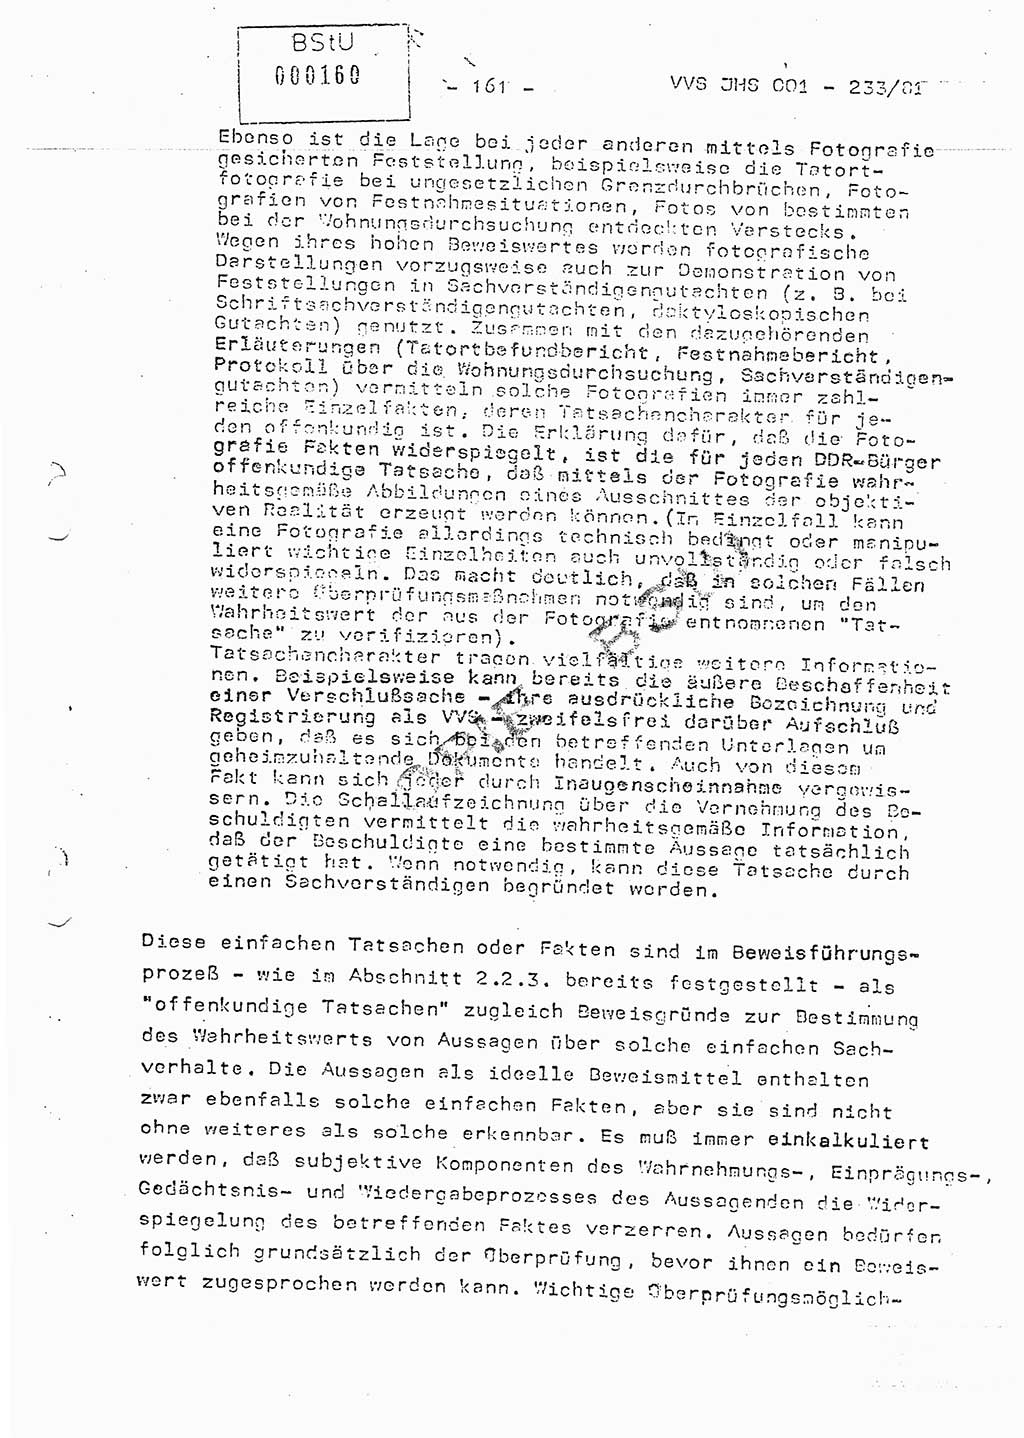 Dissertation Oberstleutnant Horst Zank (JHS), Oberstleutnant Dr. Karl-Heinz Knoblauch (JHS), Oberstleutnant Gustav-Adolf Kowalewski (HA Ⅸ), Oberstleutnant Wolfgang Plötner (HA Ⅸ), Ministerium für Staatssicherheit (MfS) [Deutsche Demokratische Republik (DDR)], Juristische Hochschule (JHS), Vertrauliche Verschlußsache (VVS) o001-233/81, Potsdam 1981, Blatt 161 (Diss. MfS DDR JHS VVS o001-233/81 1981, Bl. 161)